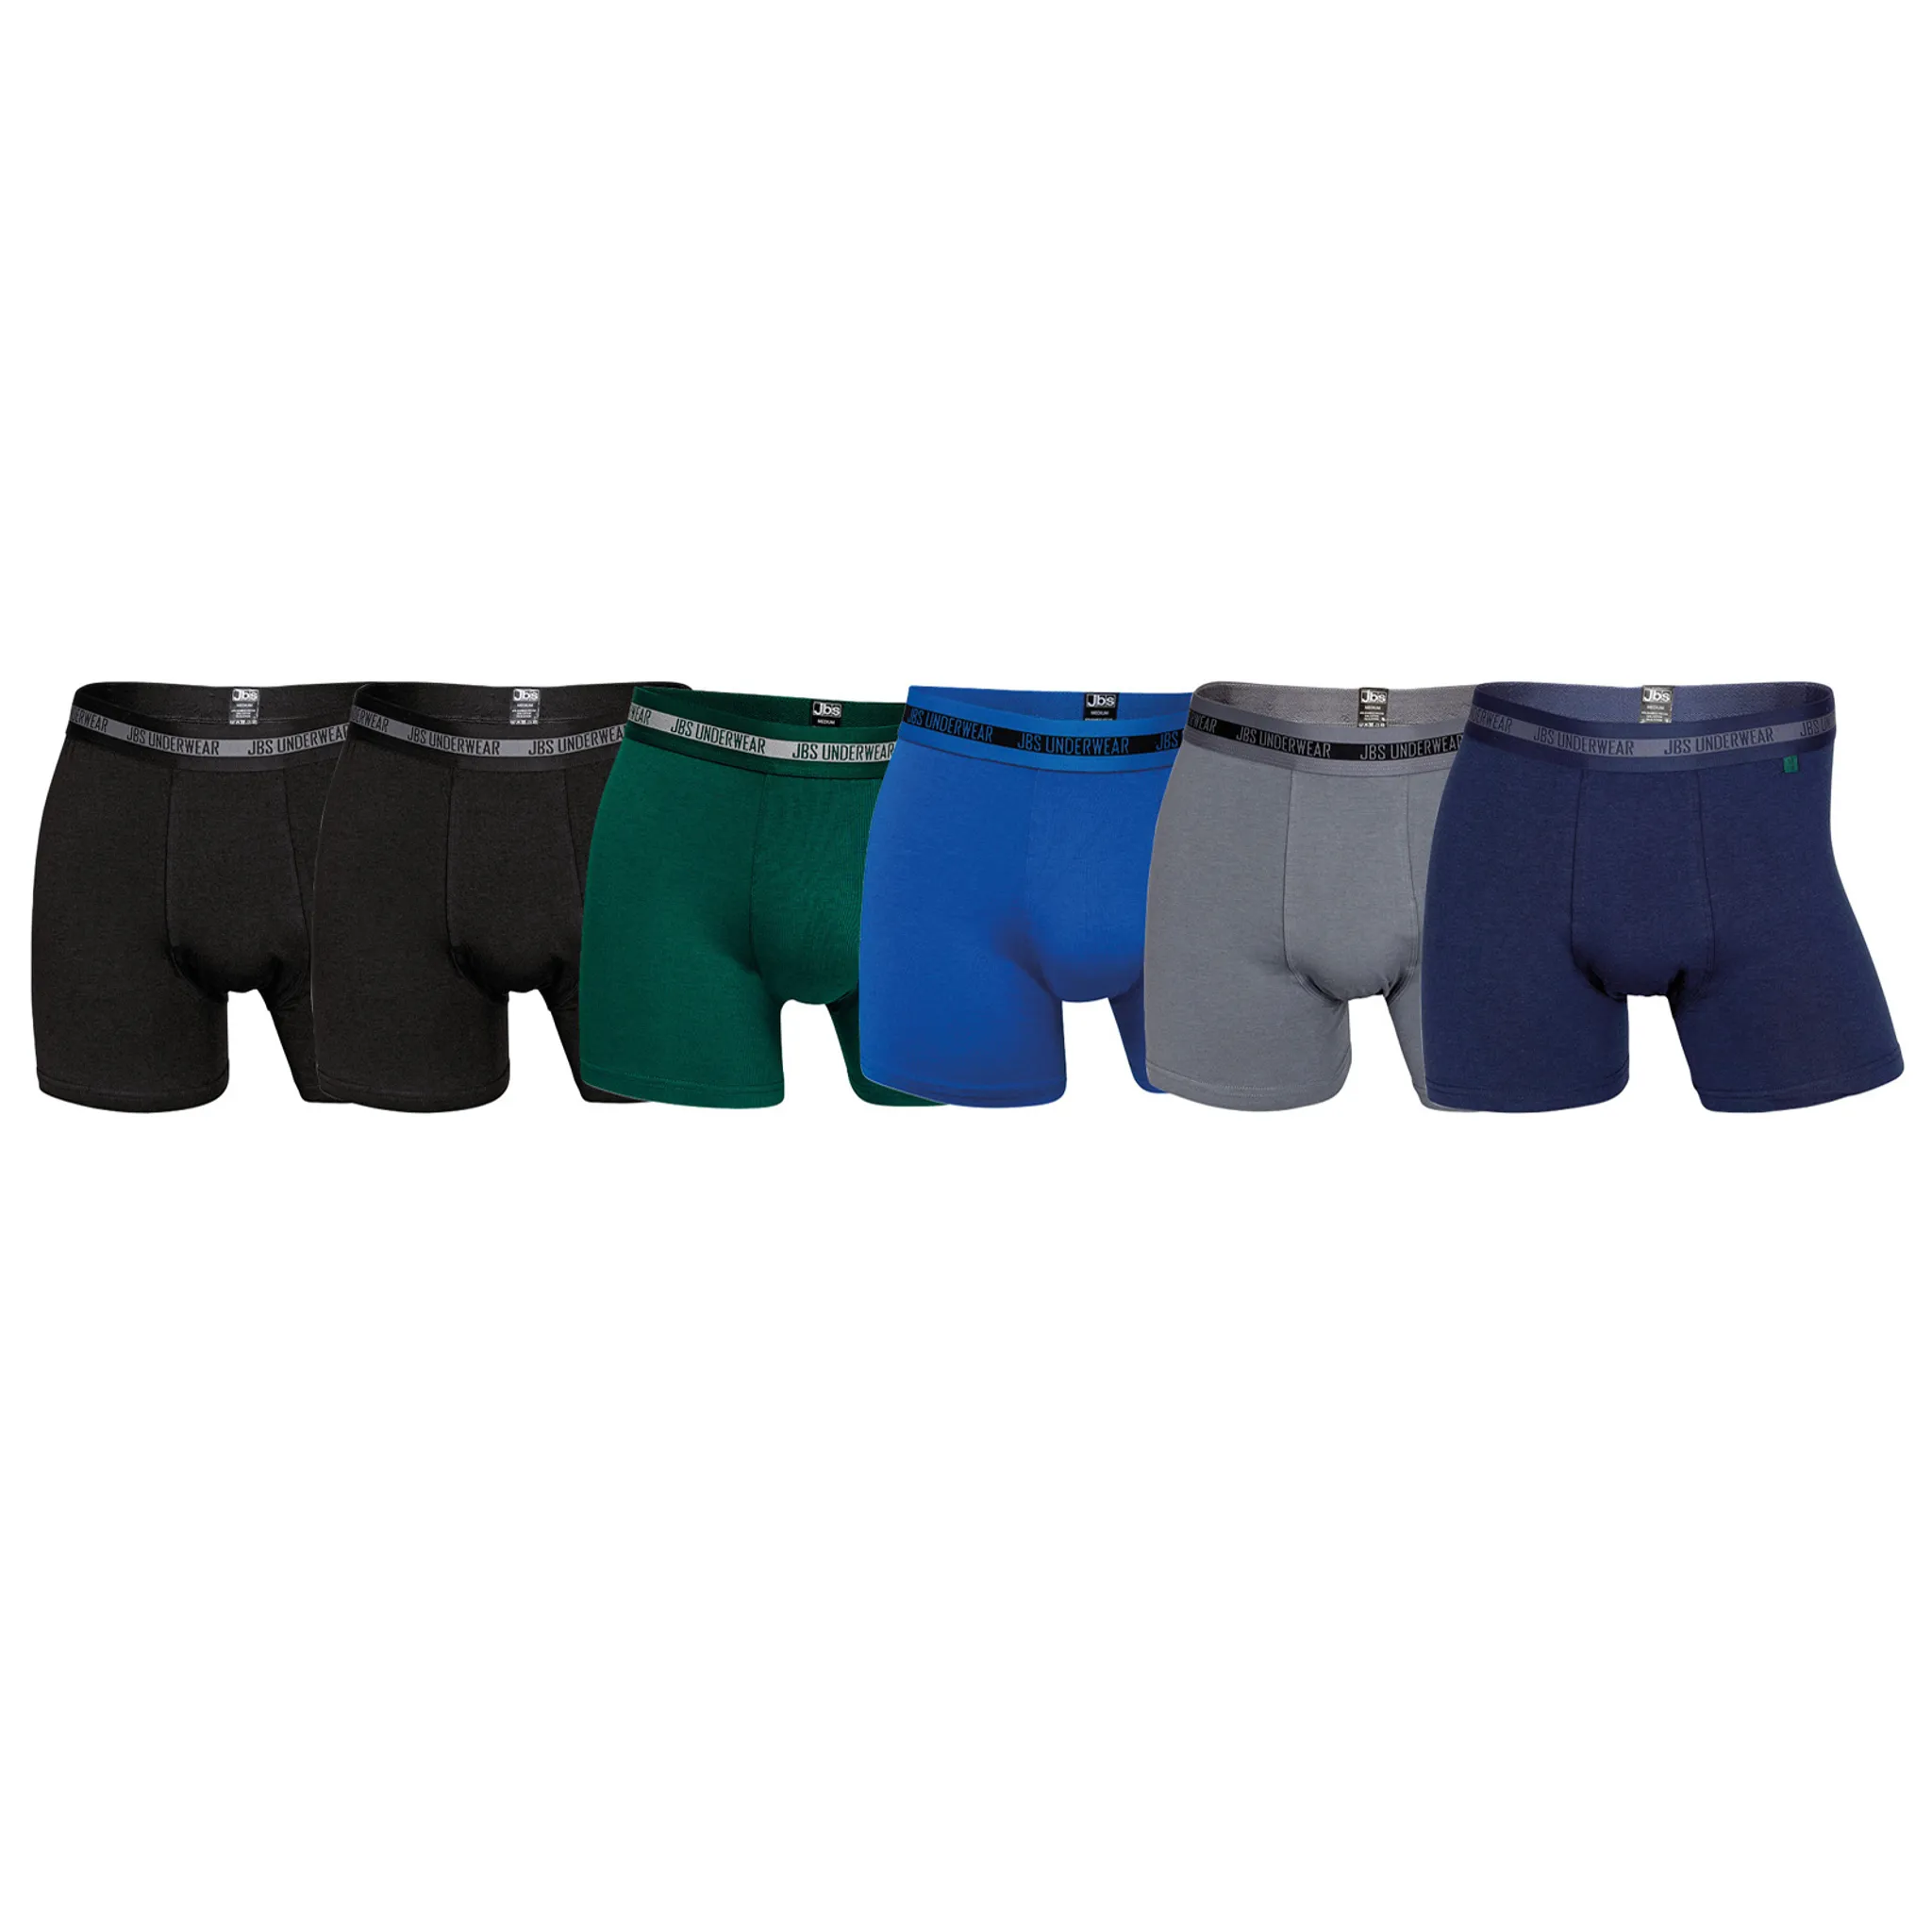 JBS Herren Boxer Shorts, 6er Pack - Pants,